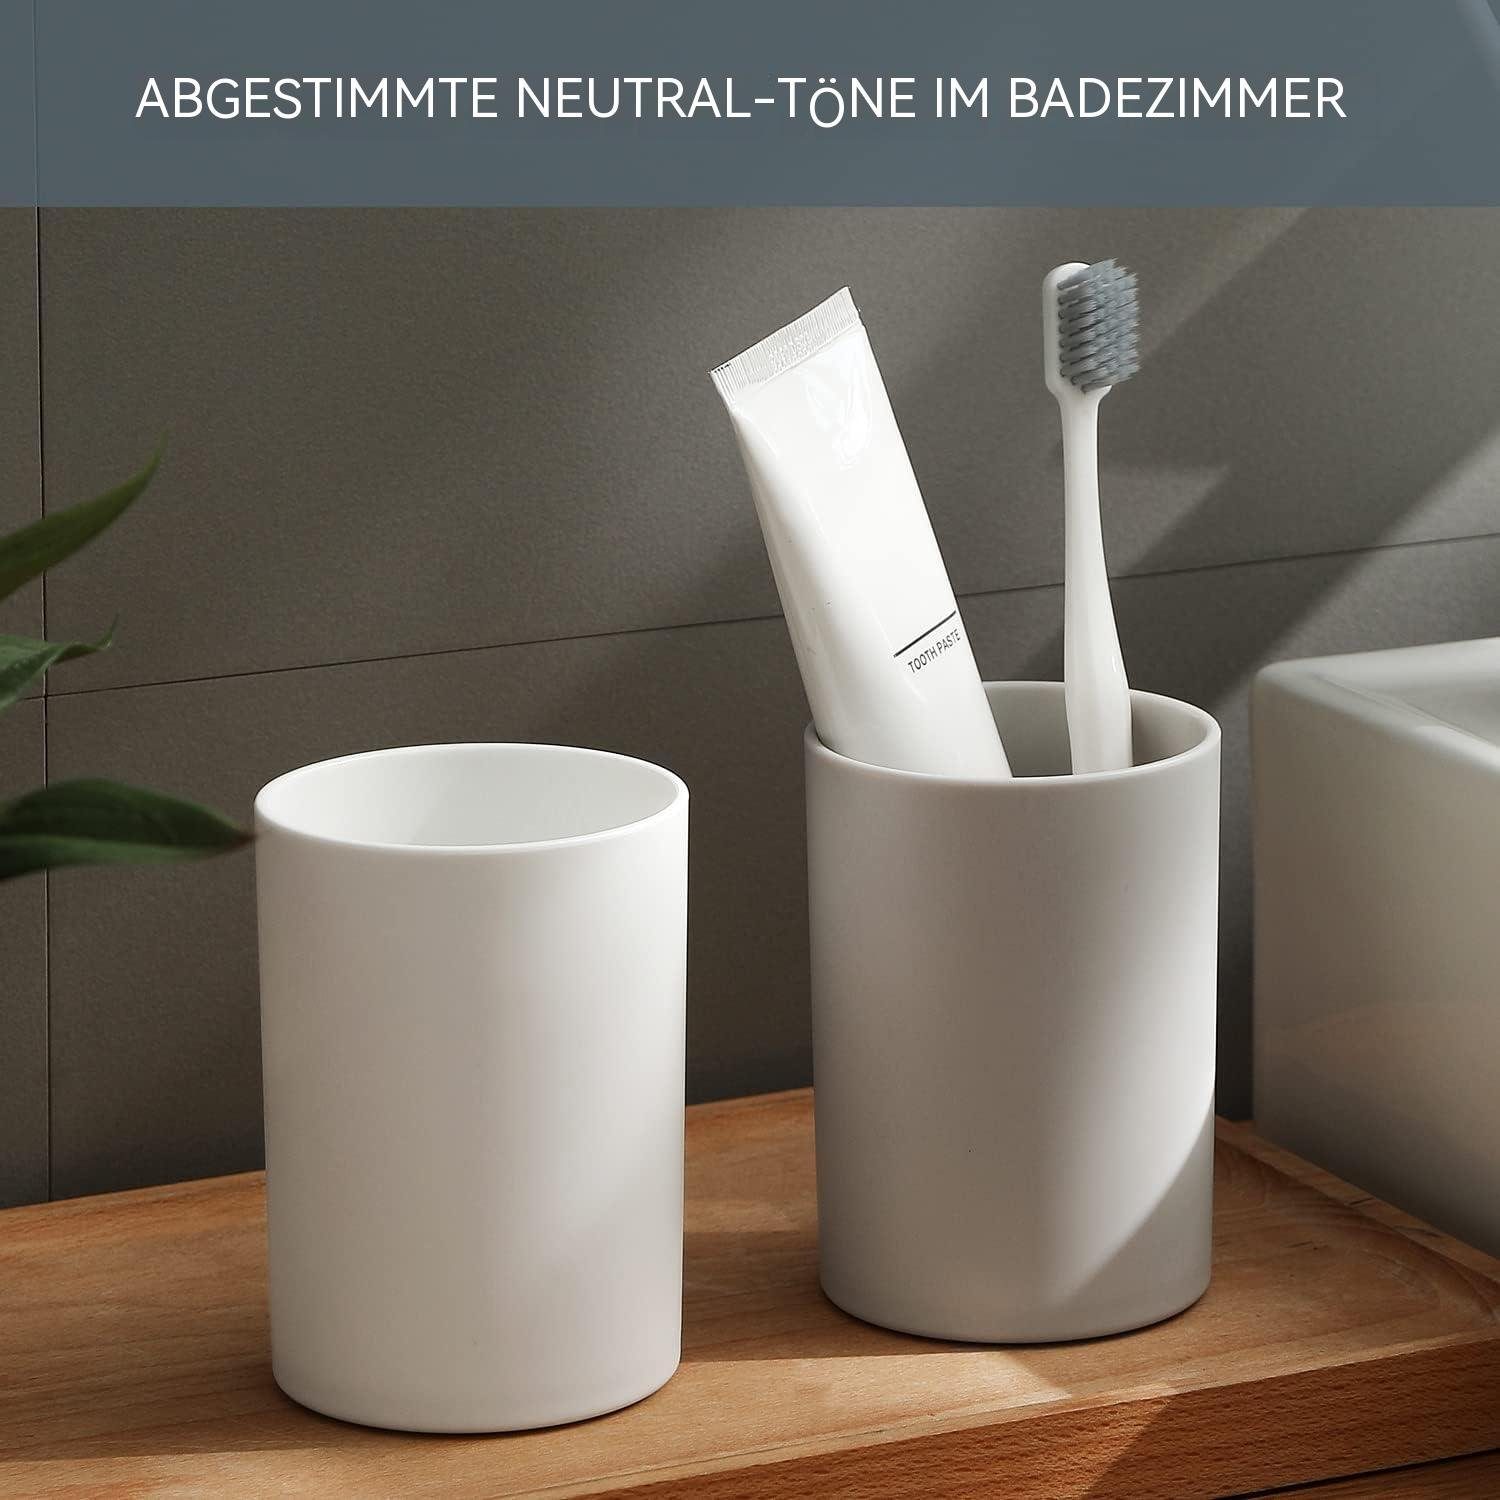 Zahnbürstenhalter TUABUR 300ml, Bade-Trinkbecher, Stk. unzerbr., 2 Weiss Kunststoff, reinig., leicht